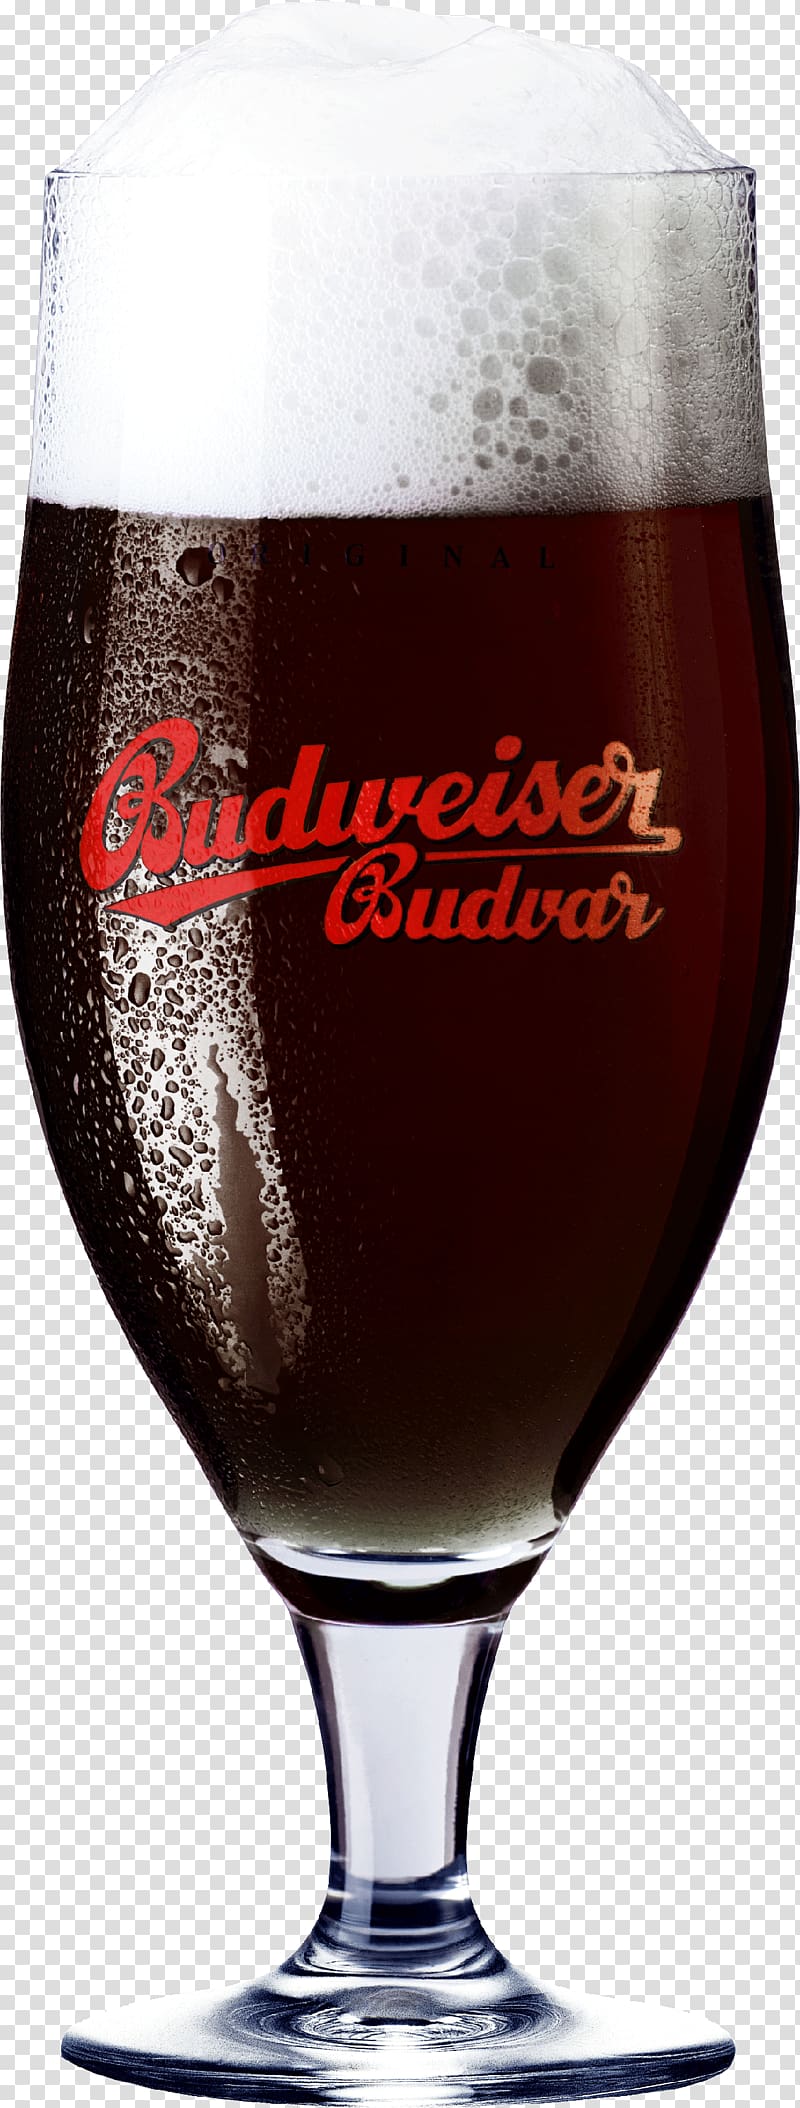 Beer Glasses České Budějovice Pint, Dark Beer transparent background PNG clipart